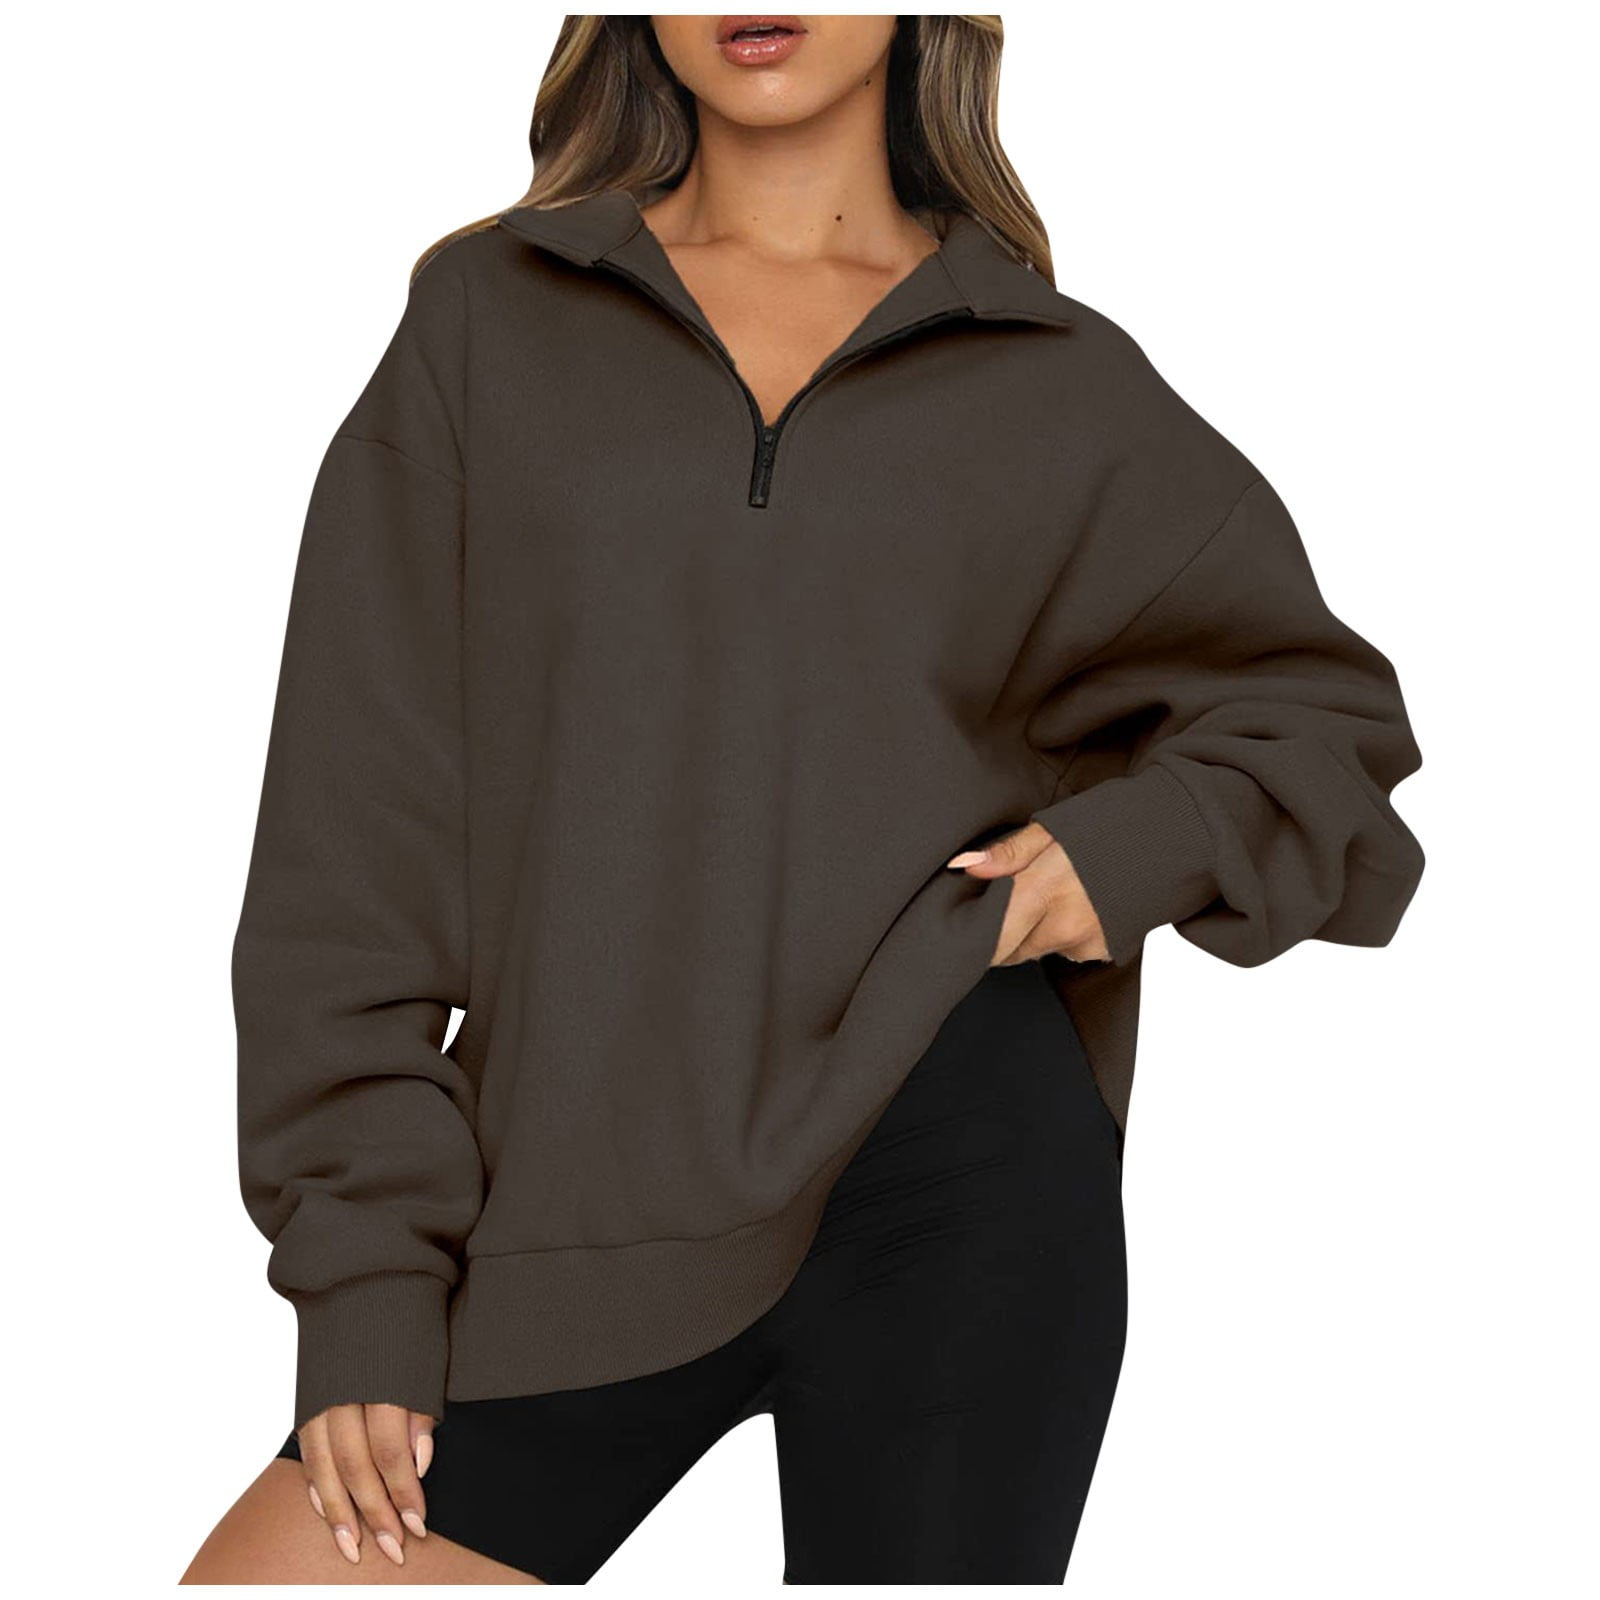 Sksloeg Womens Half Zip Pullover Sweatshirts Quarter Zip Oversized